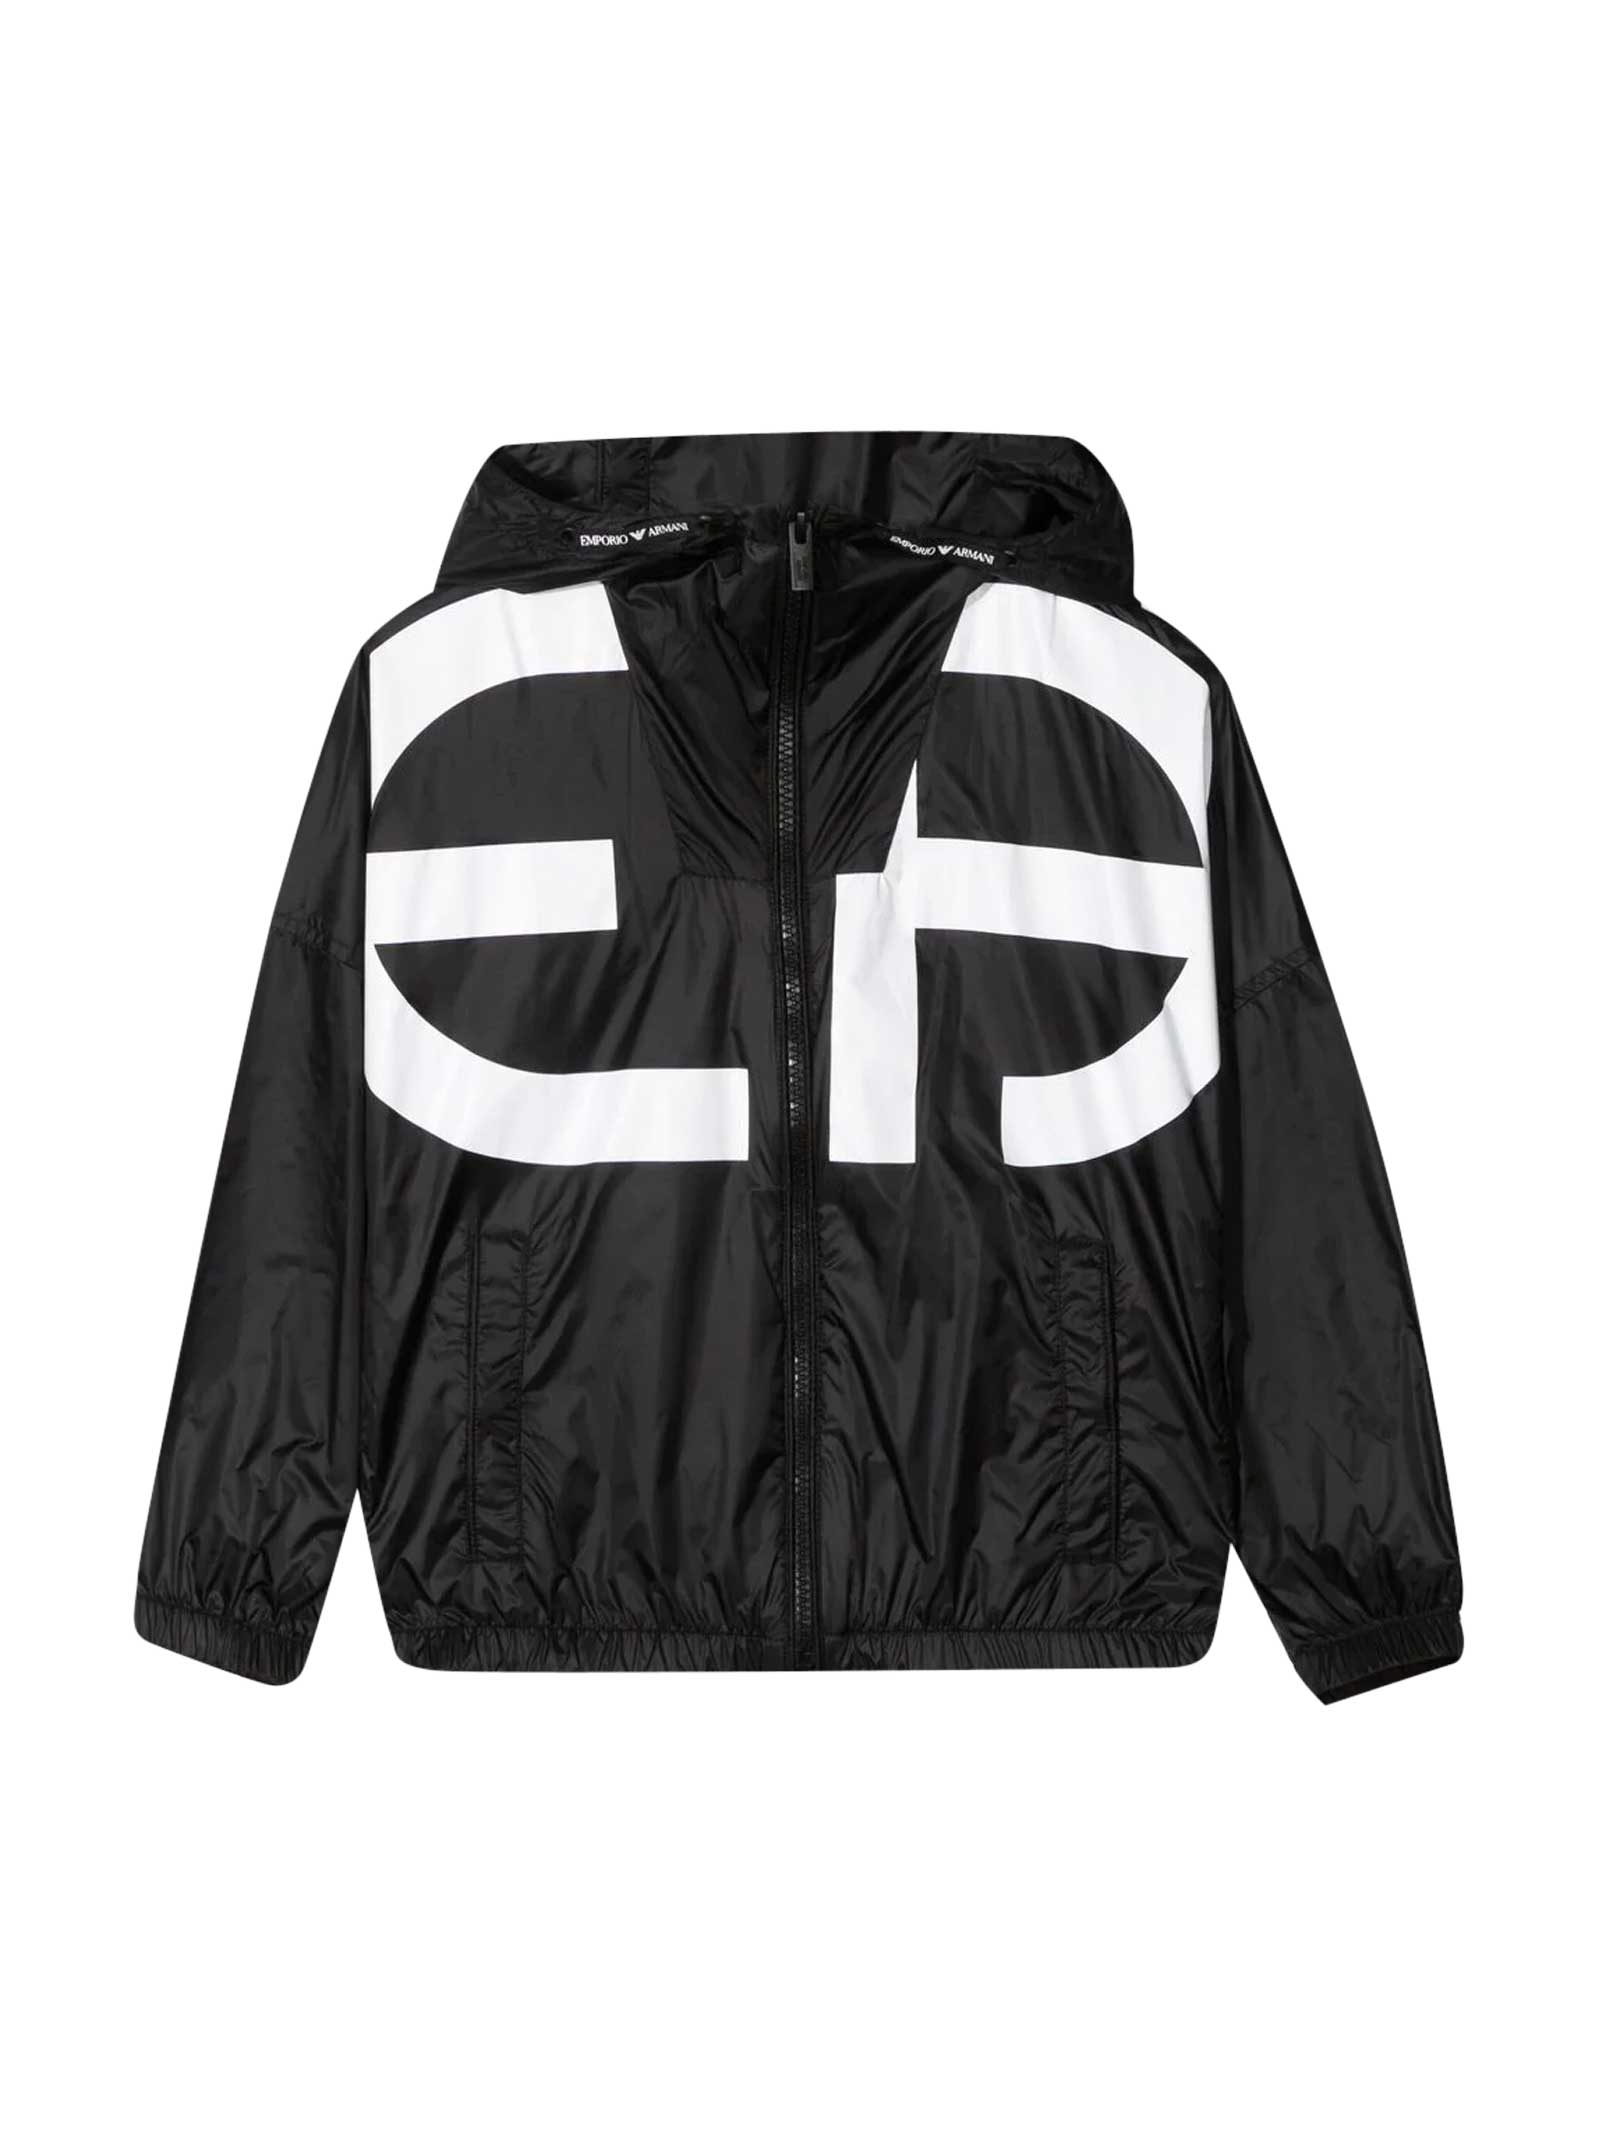 Emporio Armani Black Waterproof Jacket